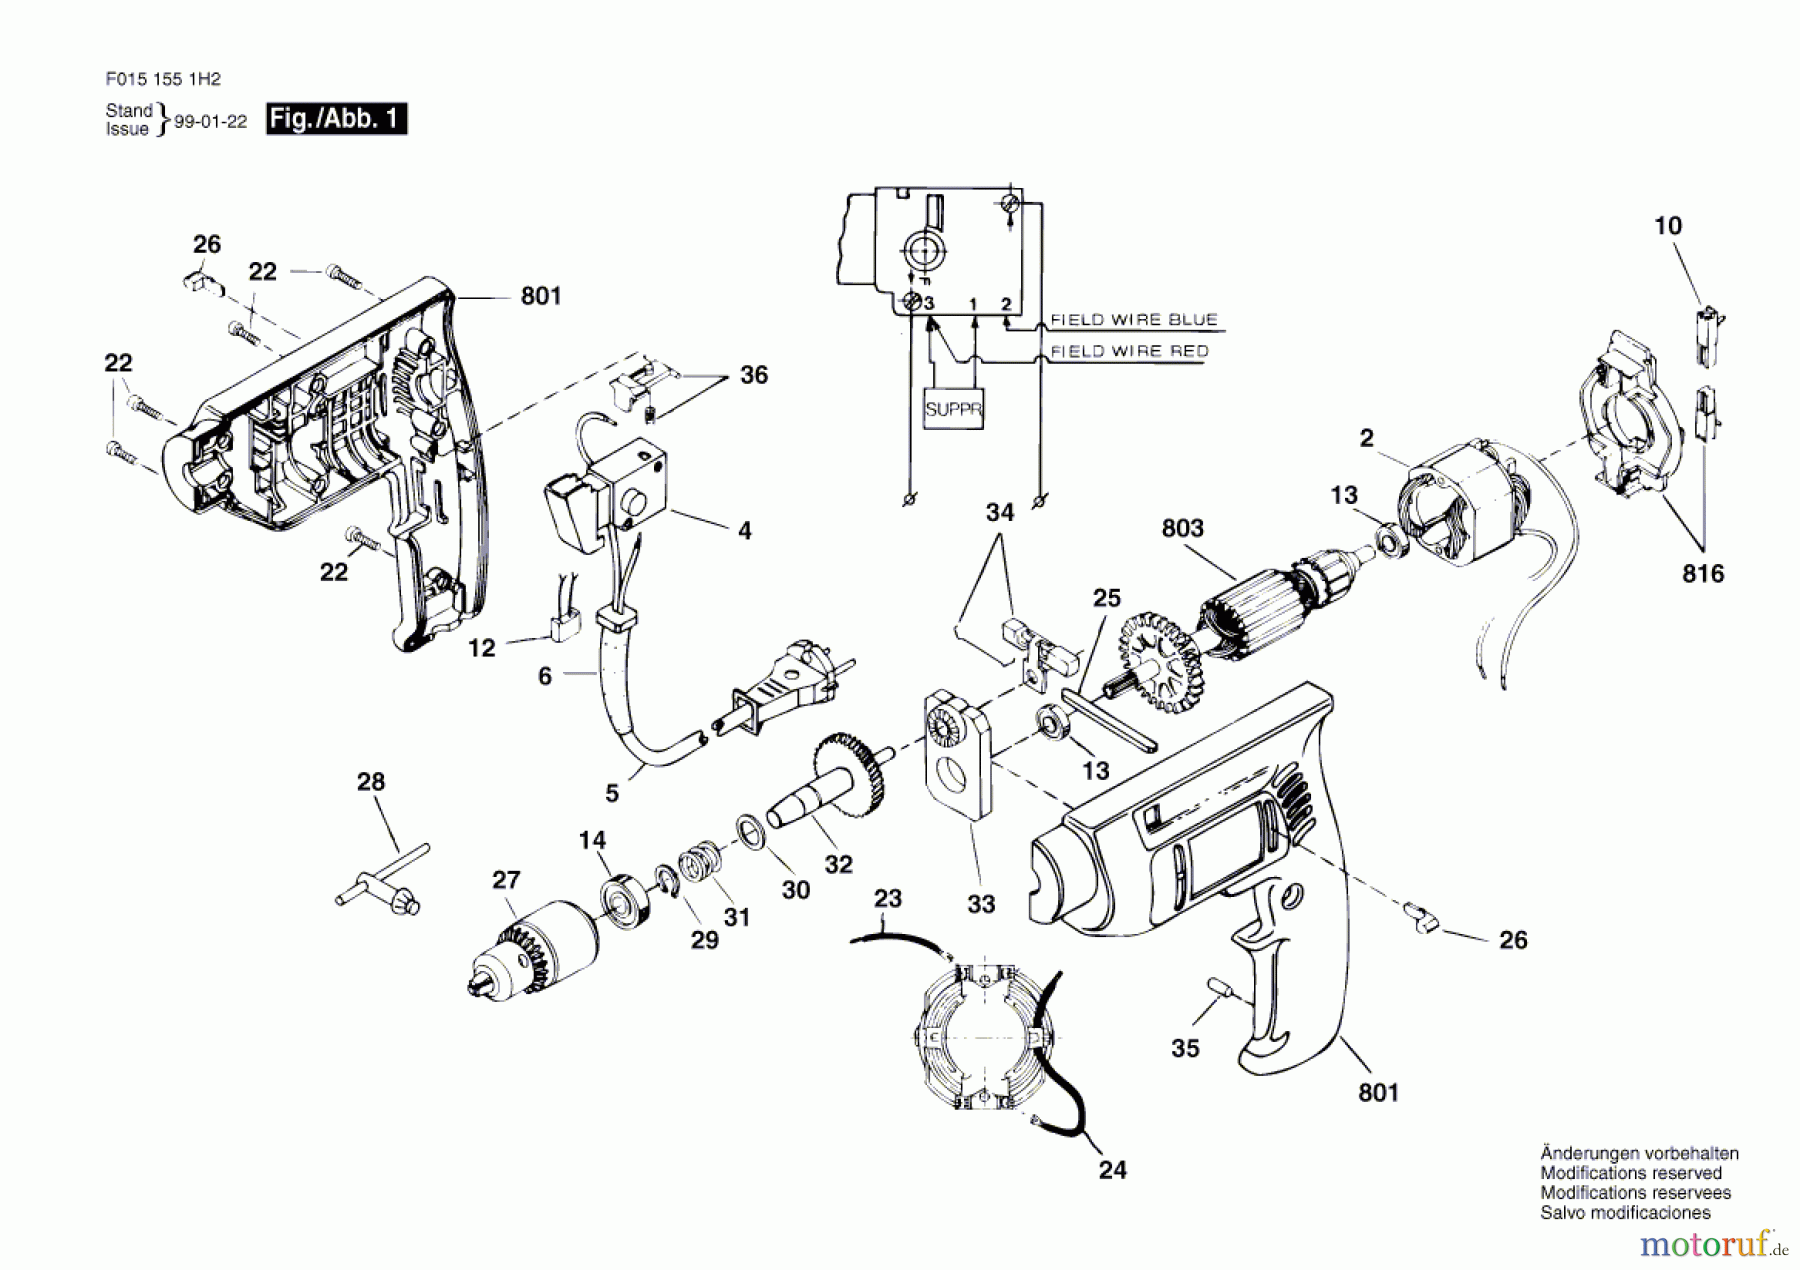  Bosch Werkzeug Bohrmaschine 1551H2 Seite 1